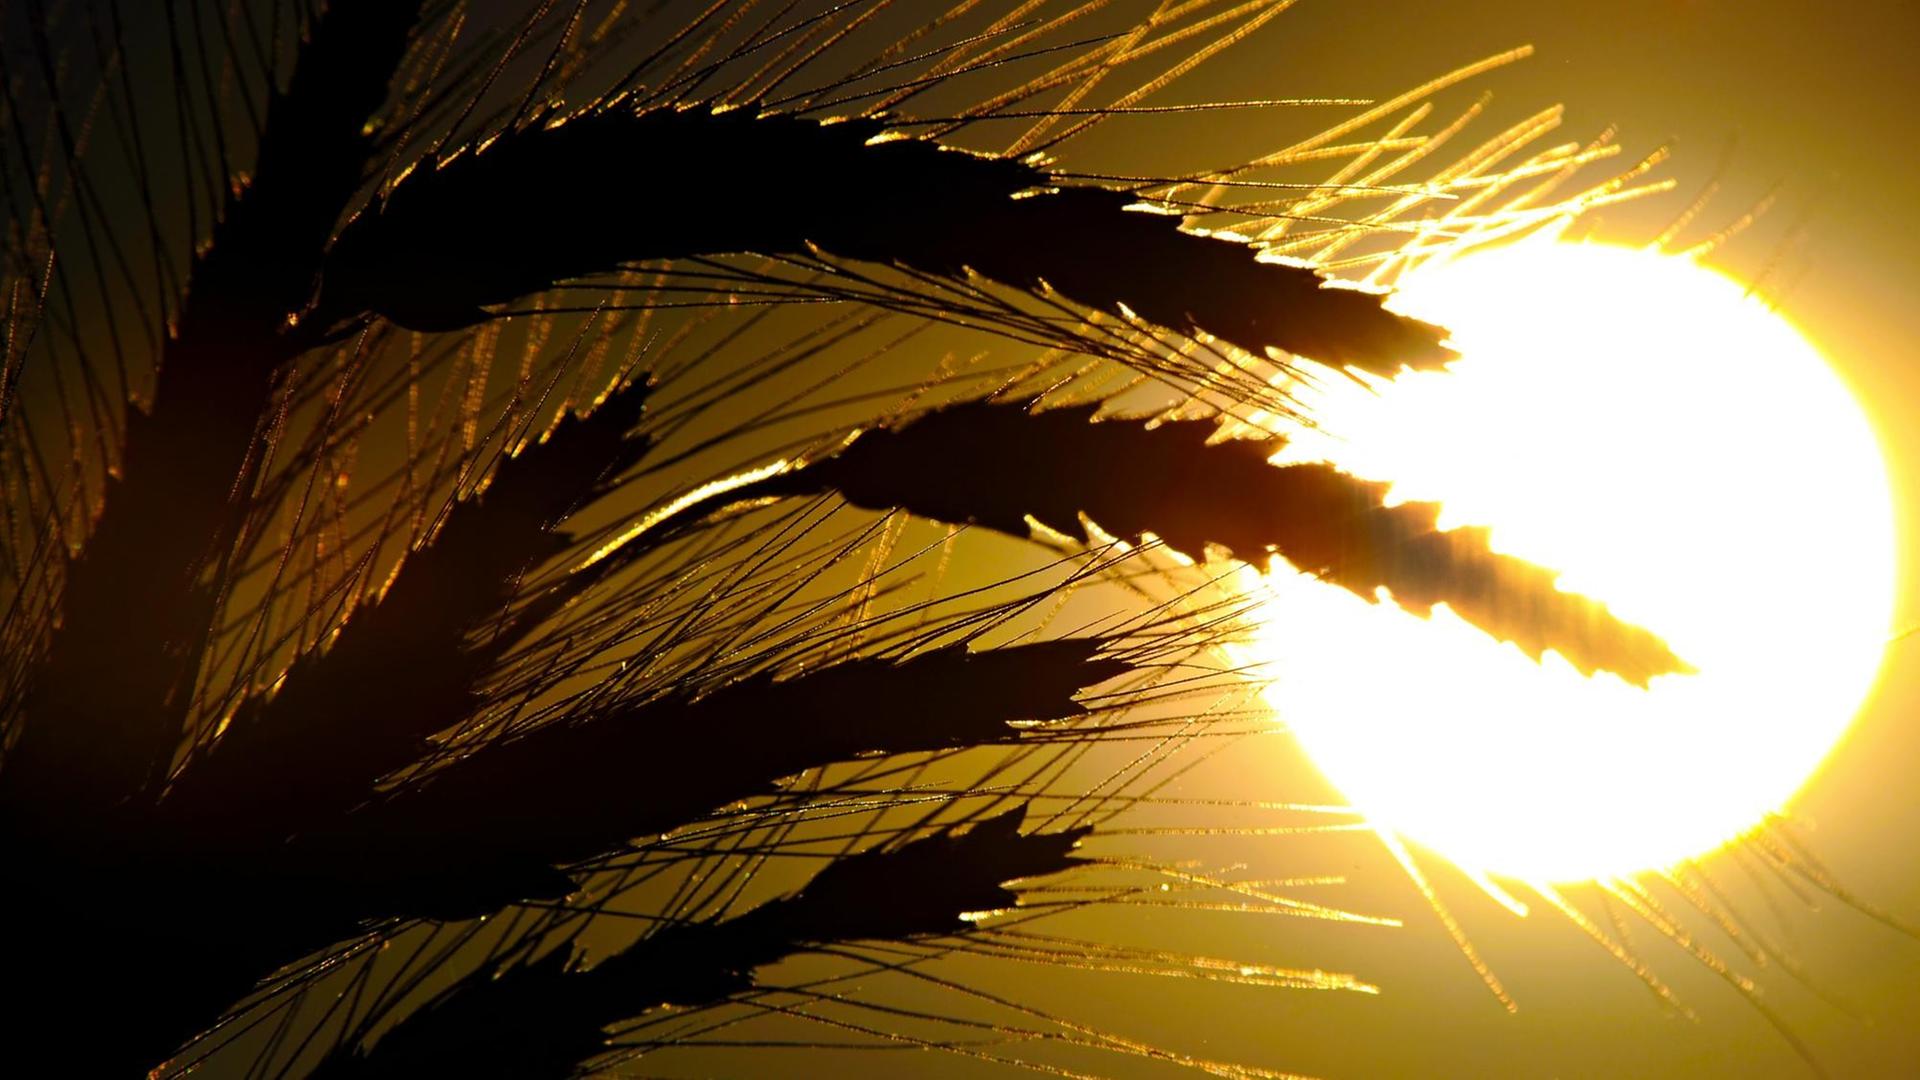 Getreide steht am Dienstag (23.07.2012) in Visselhövede (Kreis Rotenburg) vor der untergehenden Sonne auf einem Feld.